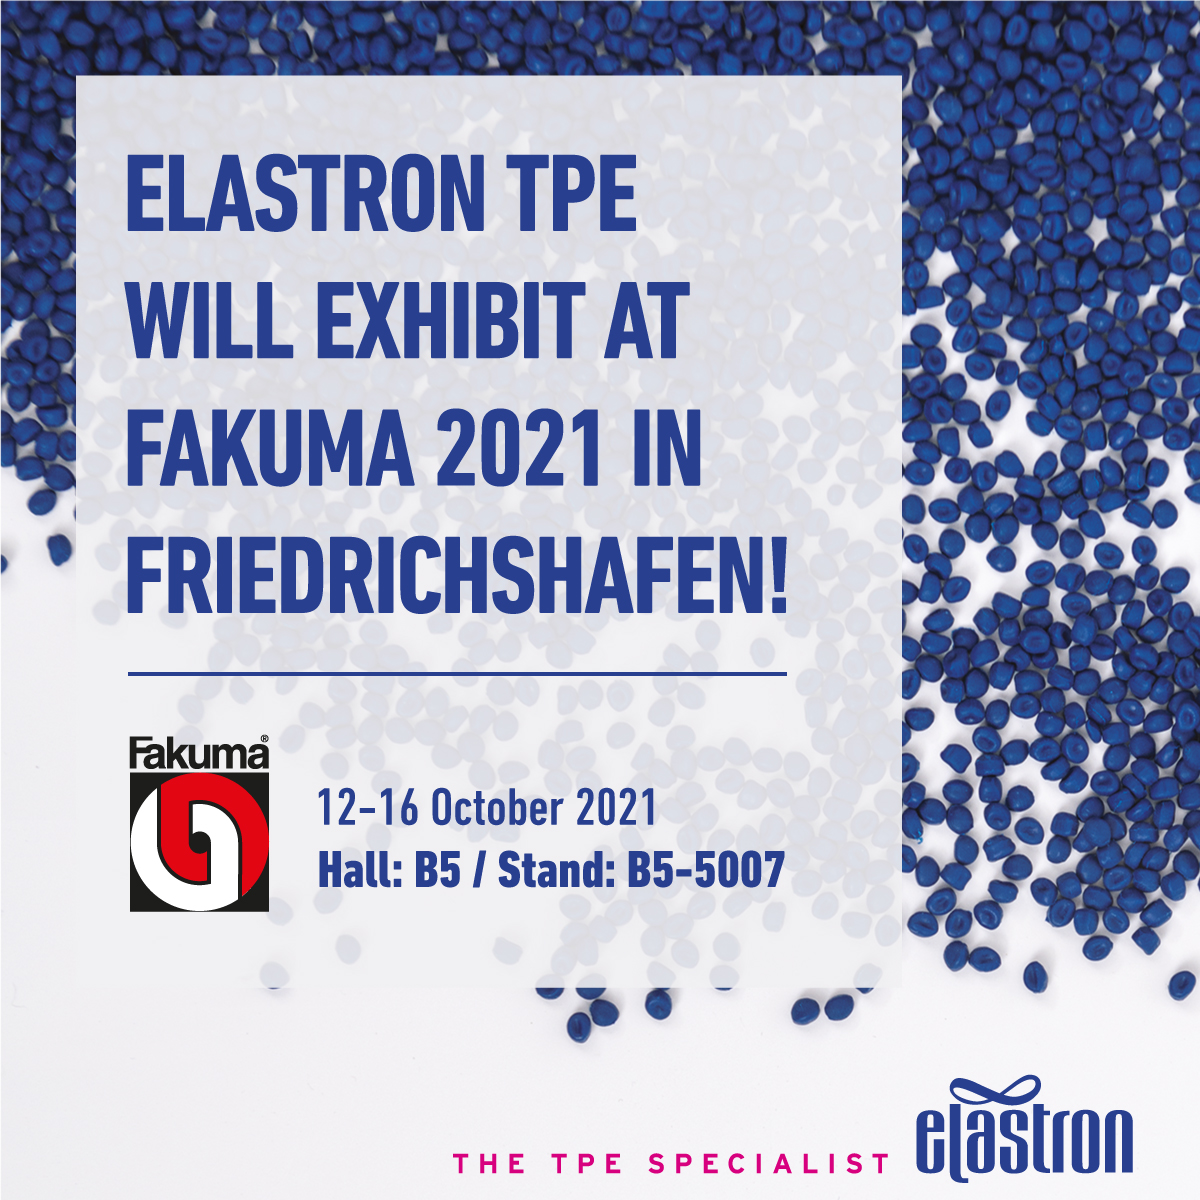 Elastron TPE will exhibit at Fakuma 2021